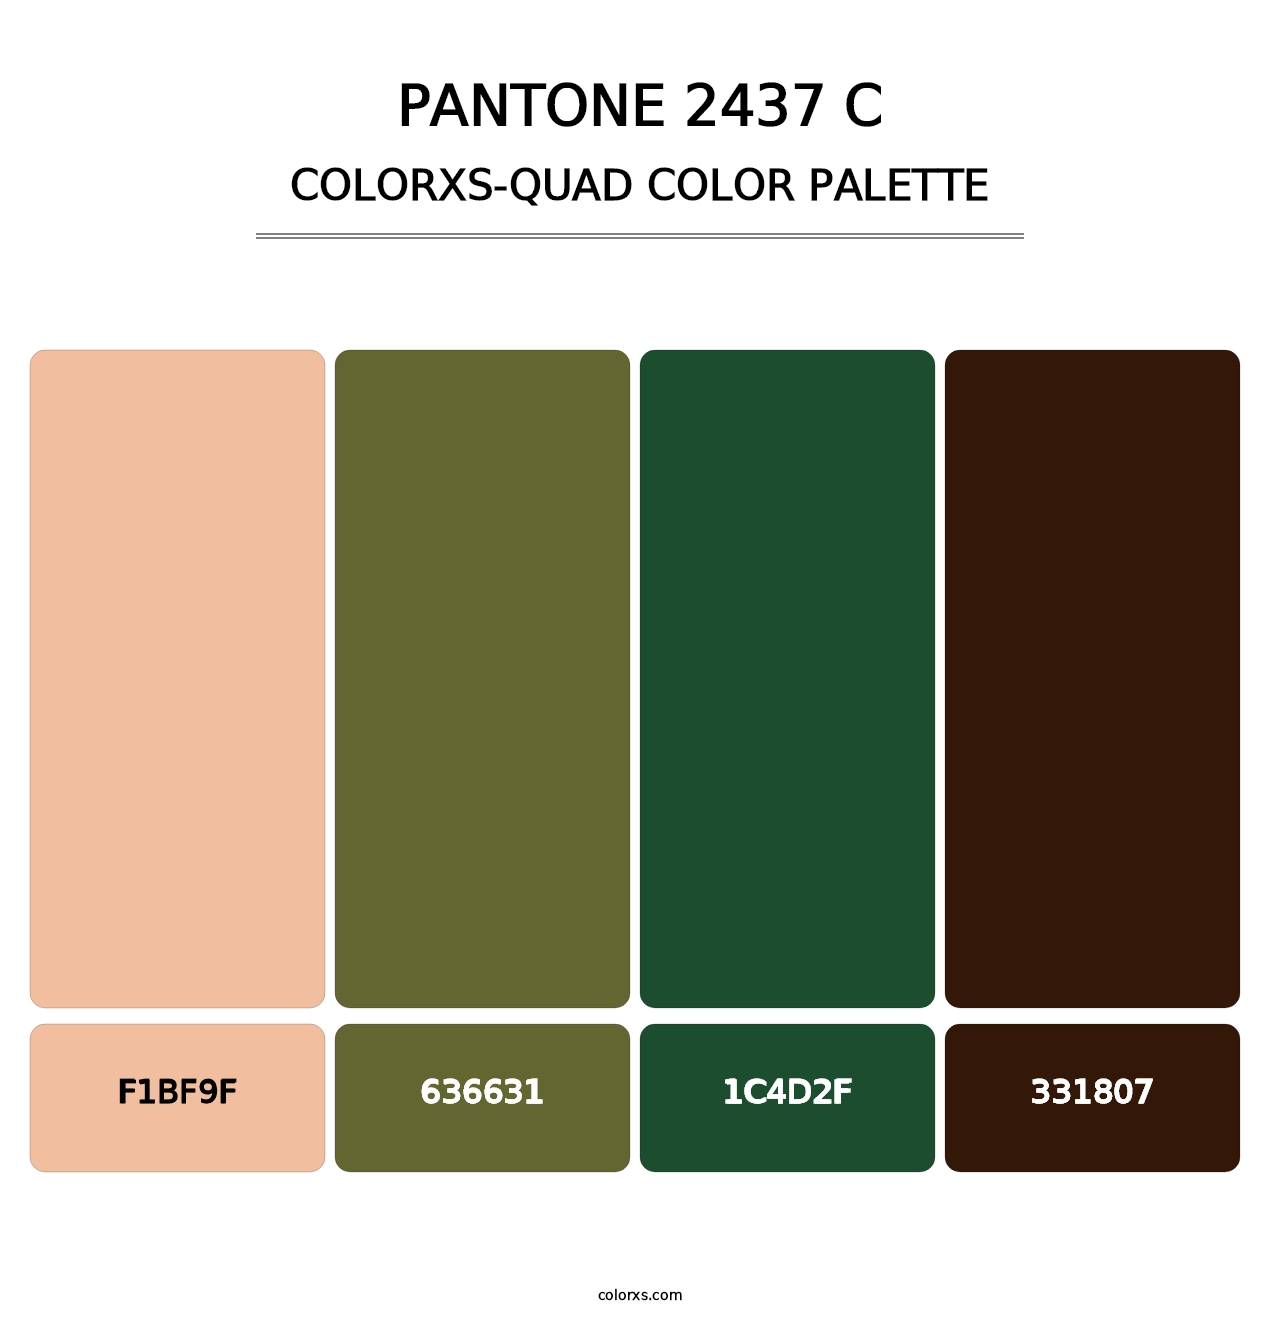 PANTONE 2437 C - Colorxs Quad Palette